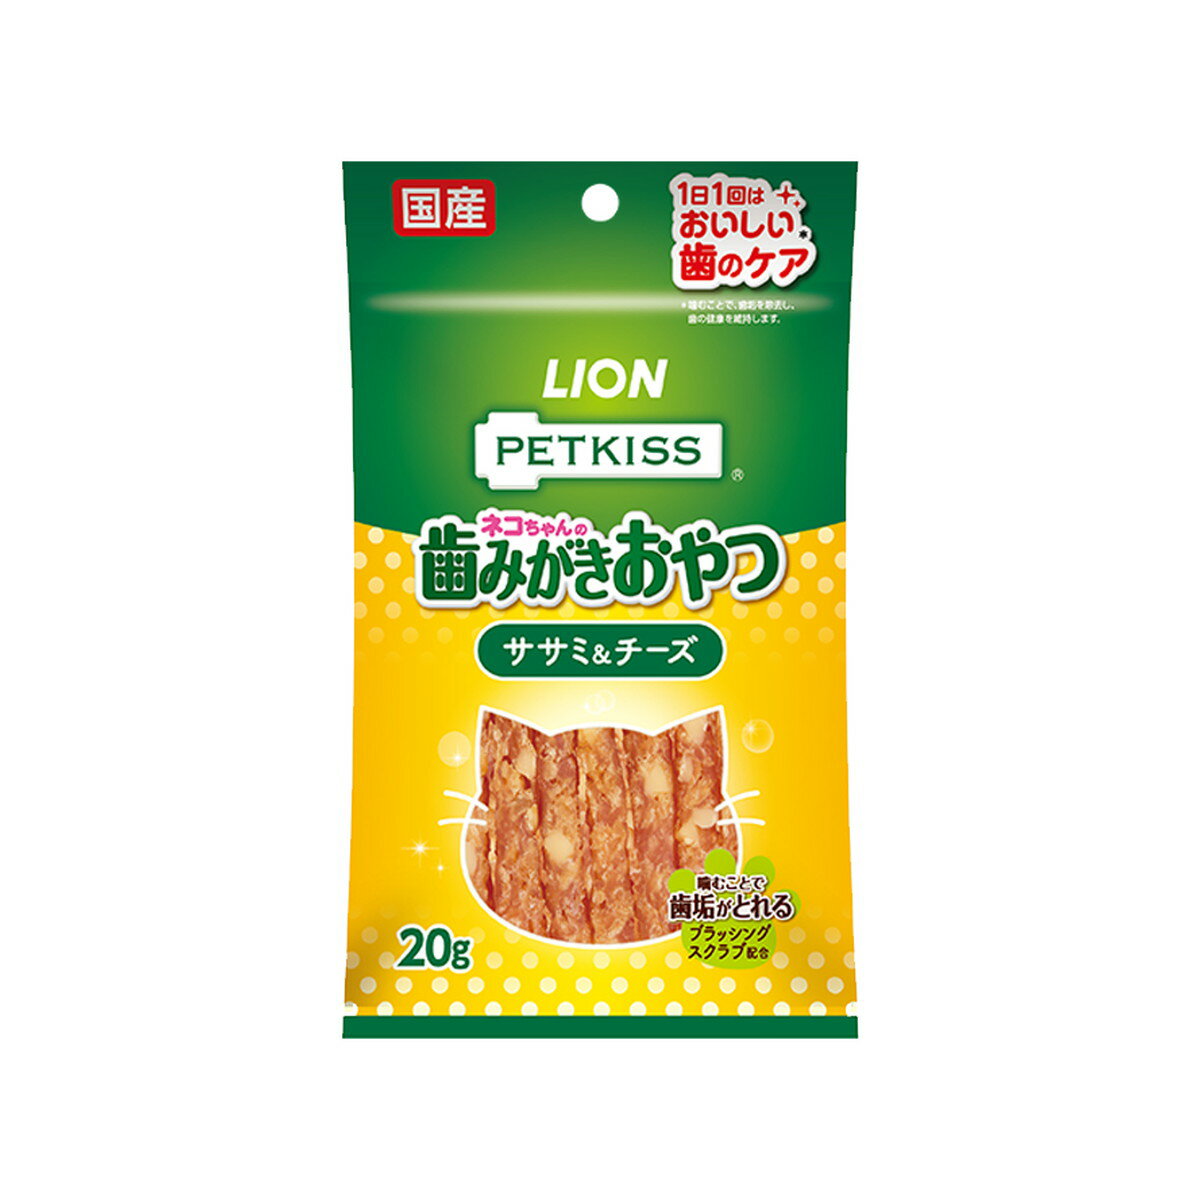 商品名：ライオン PETKISS ネコちゃんの歯みがきおやつ ササミ&チーズ 20g内容量：20gJANコード：4903351004351発売元、製造元、輸入元又は販売元：ライオンペット原産国：日本商品番号：101-4903351004351商品説明愛猫の好きな“ササミ”と“チーズ”が、噛むことで歯みがきできるおやつに。噛むことで歯の汚れ・歯垢を除去。秘密は「ブラッシングスクラブ＊」、歯と歯のすき間に入り、噛むことで歯垢を除去。ピロリン酸ナトリウム、ポリリジン配合。国産ササミ使用。広告文責：アットライフ株式会社TEL 050-3196-1510 ※商品パッケージは変更の場合あり。メーカー欠品または完売の際、キャンセルをお願いすることがあります。ご了承ください。